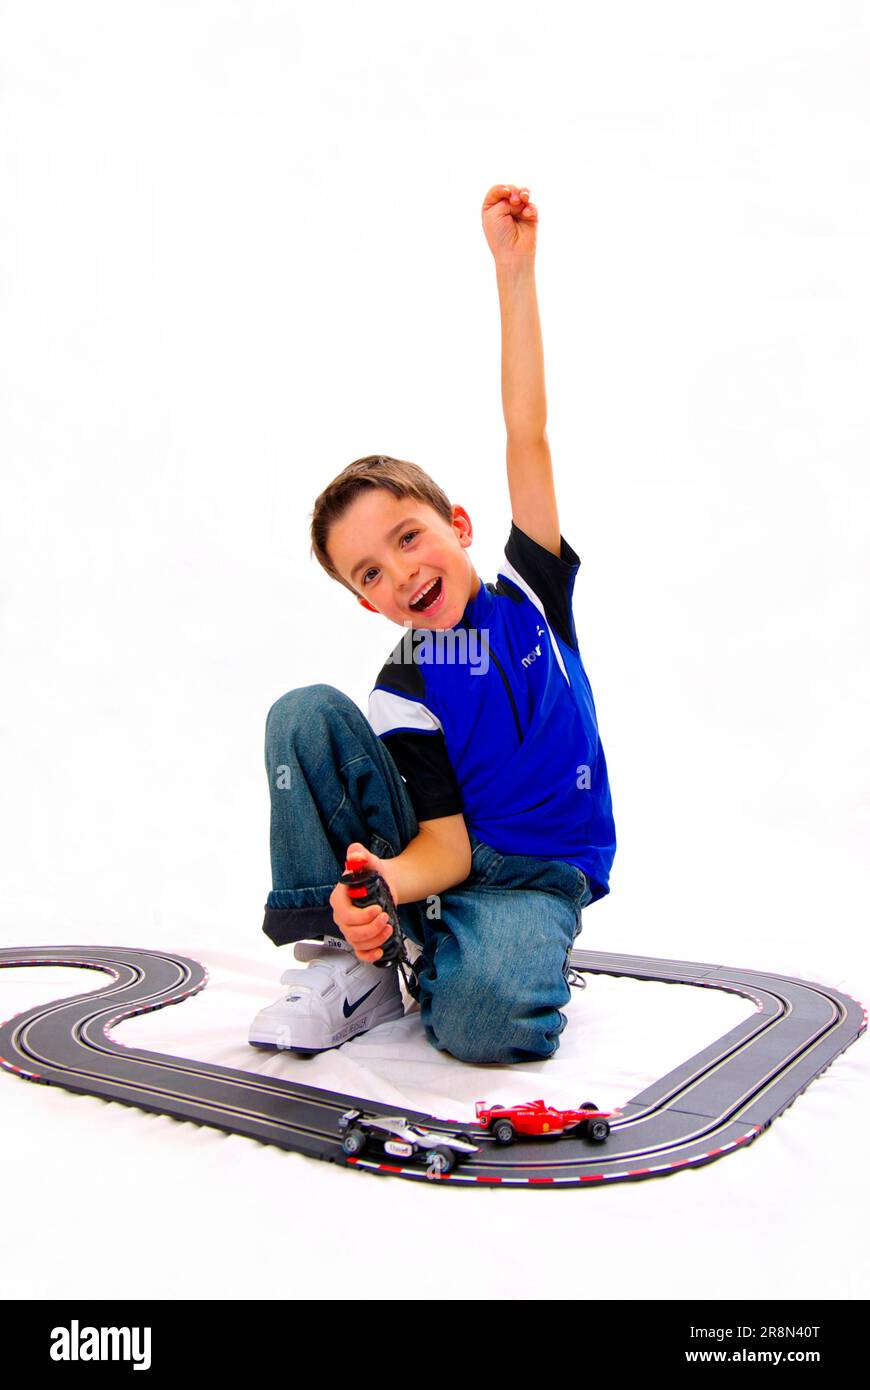 Junge mit Rennstrecke, Daumen hoch, Daumen hoch, Handzeichen, Spielzeug, Spiel, carrera-Titel Stockfoto